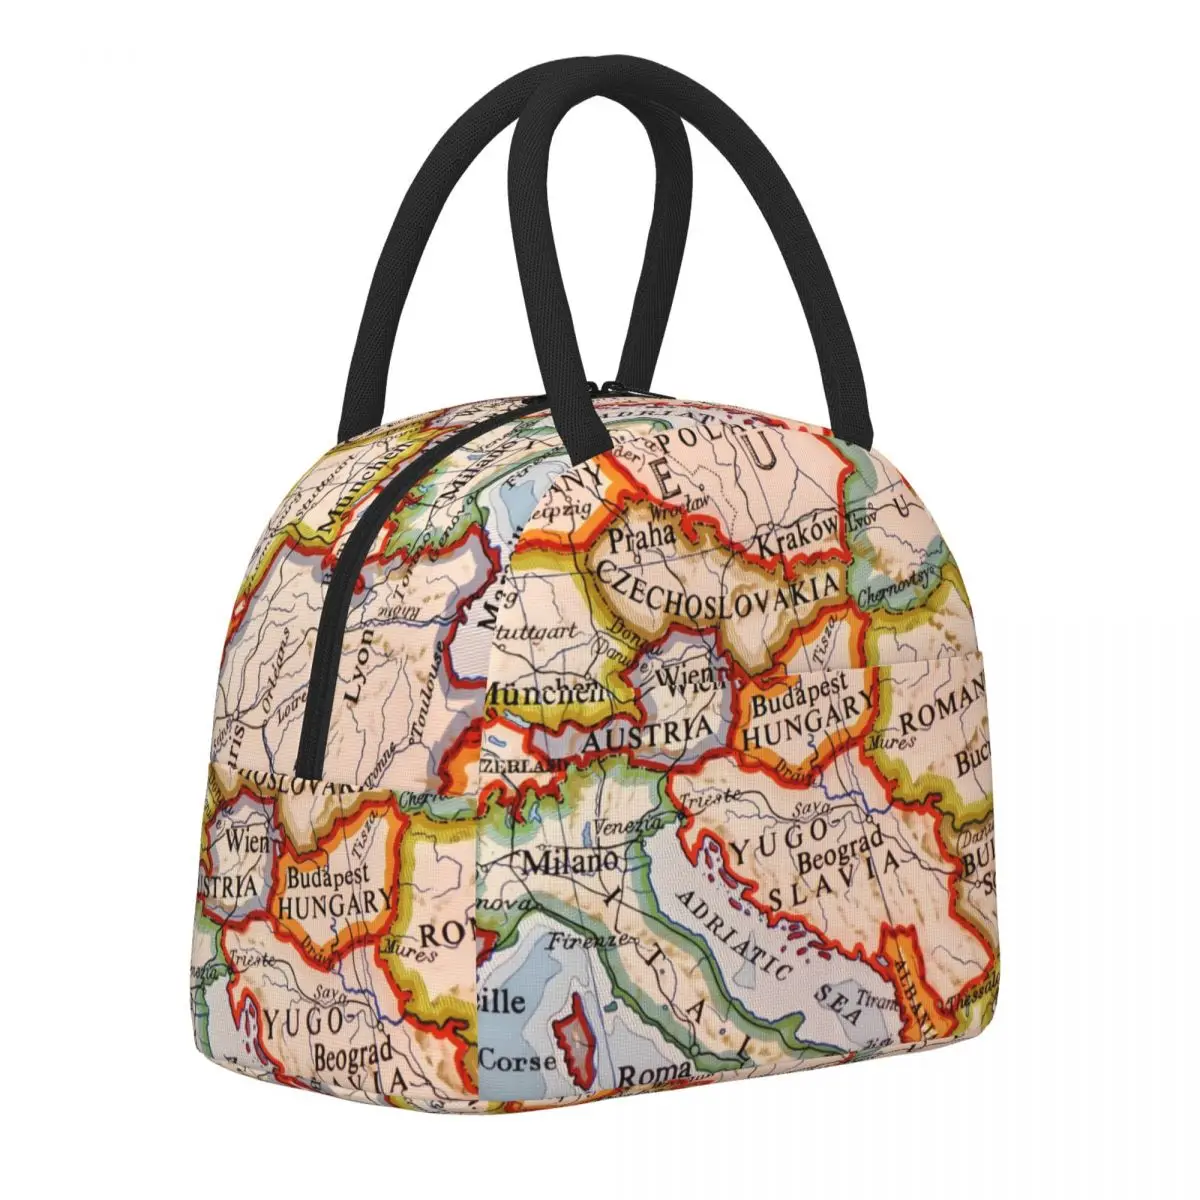 

Сумка для ланча с картой мира, удобный красочный географический Ланч-бокс, дизайнерская офисная сумка-холодильник, модная Термосумка-тоут из ткани Оксфорд